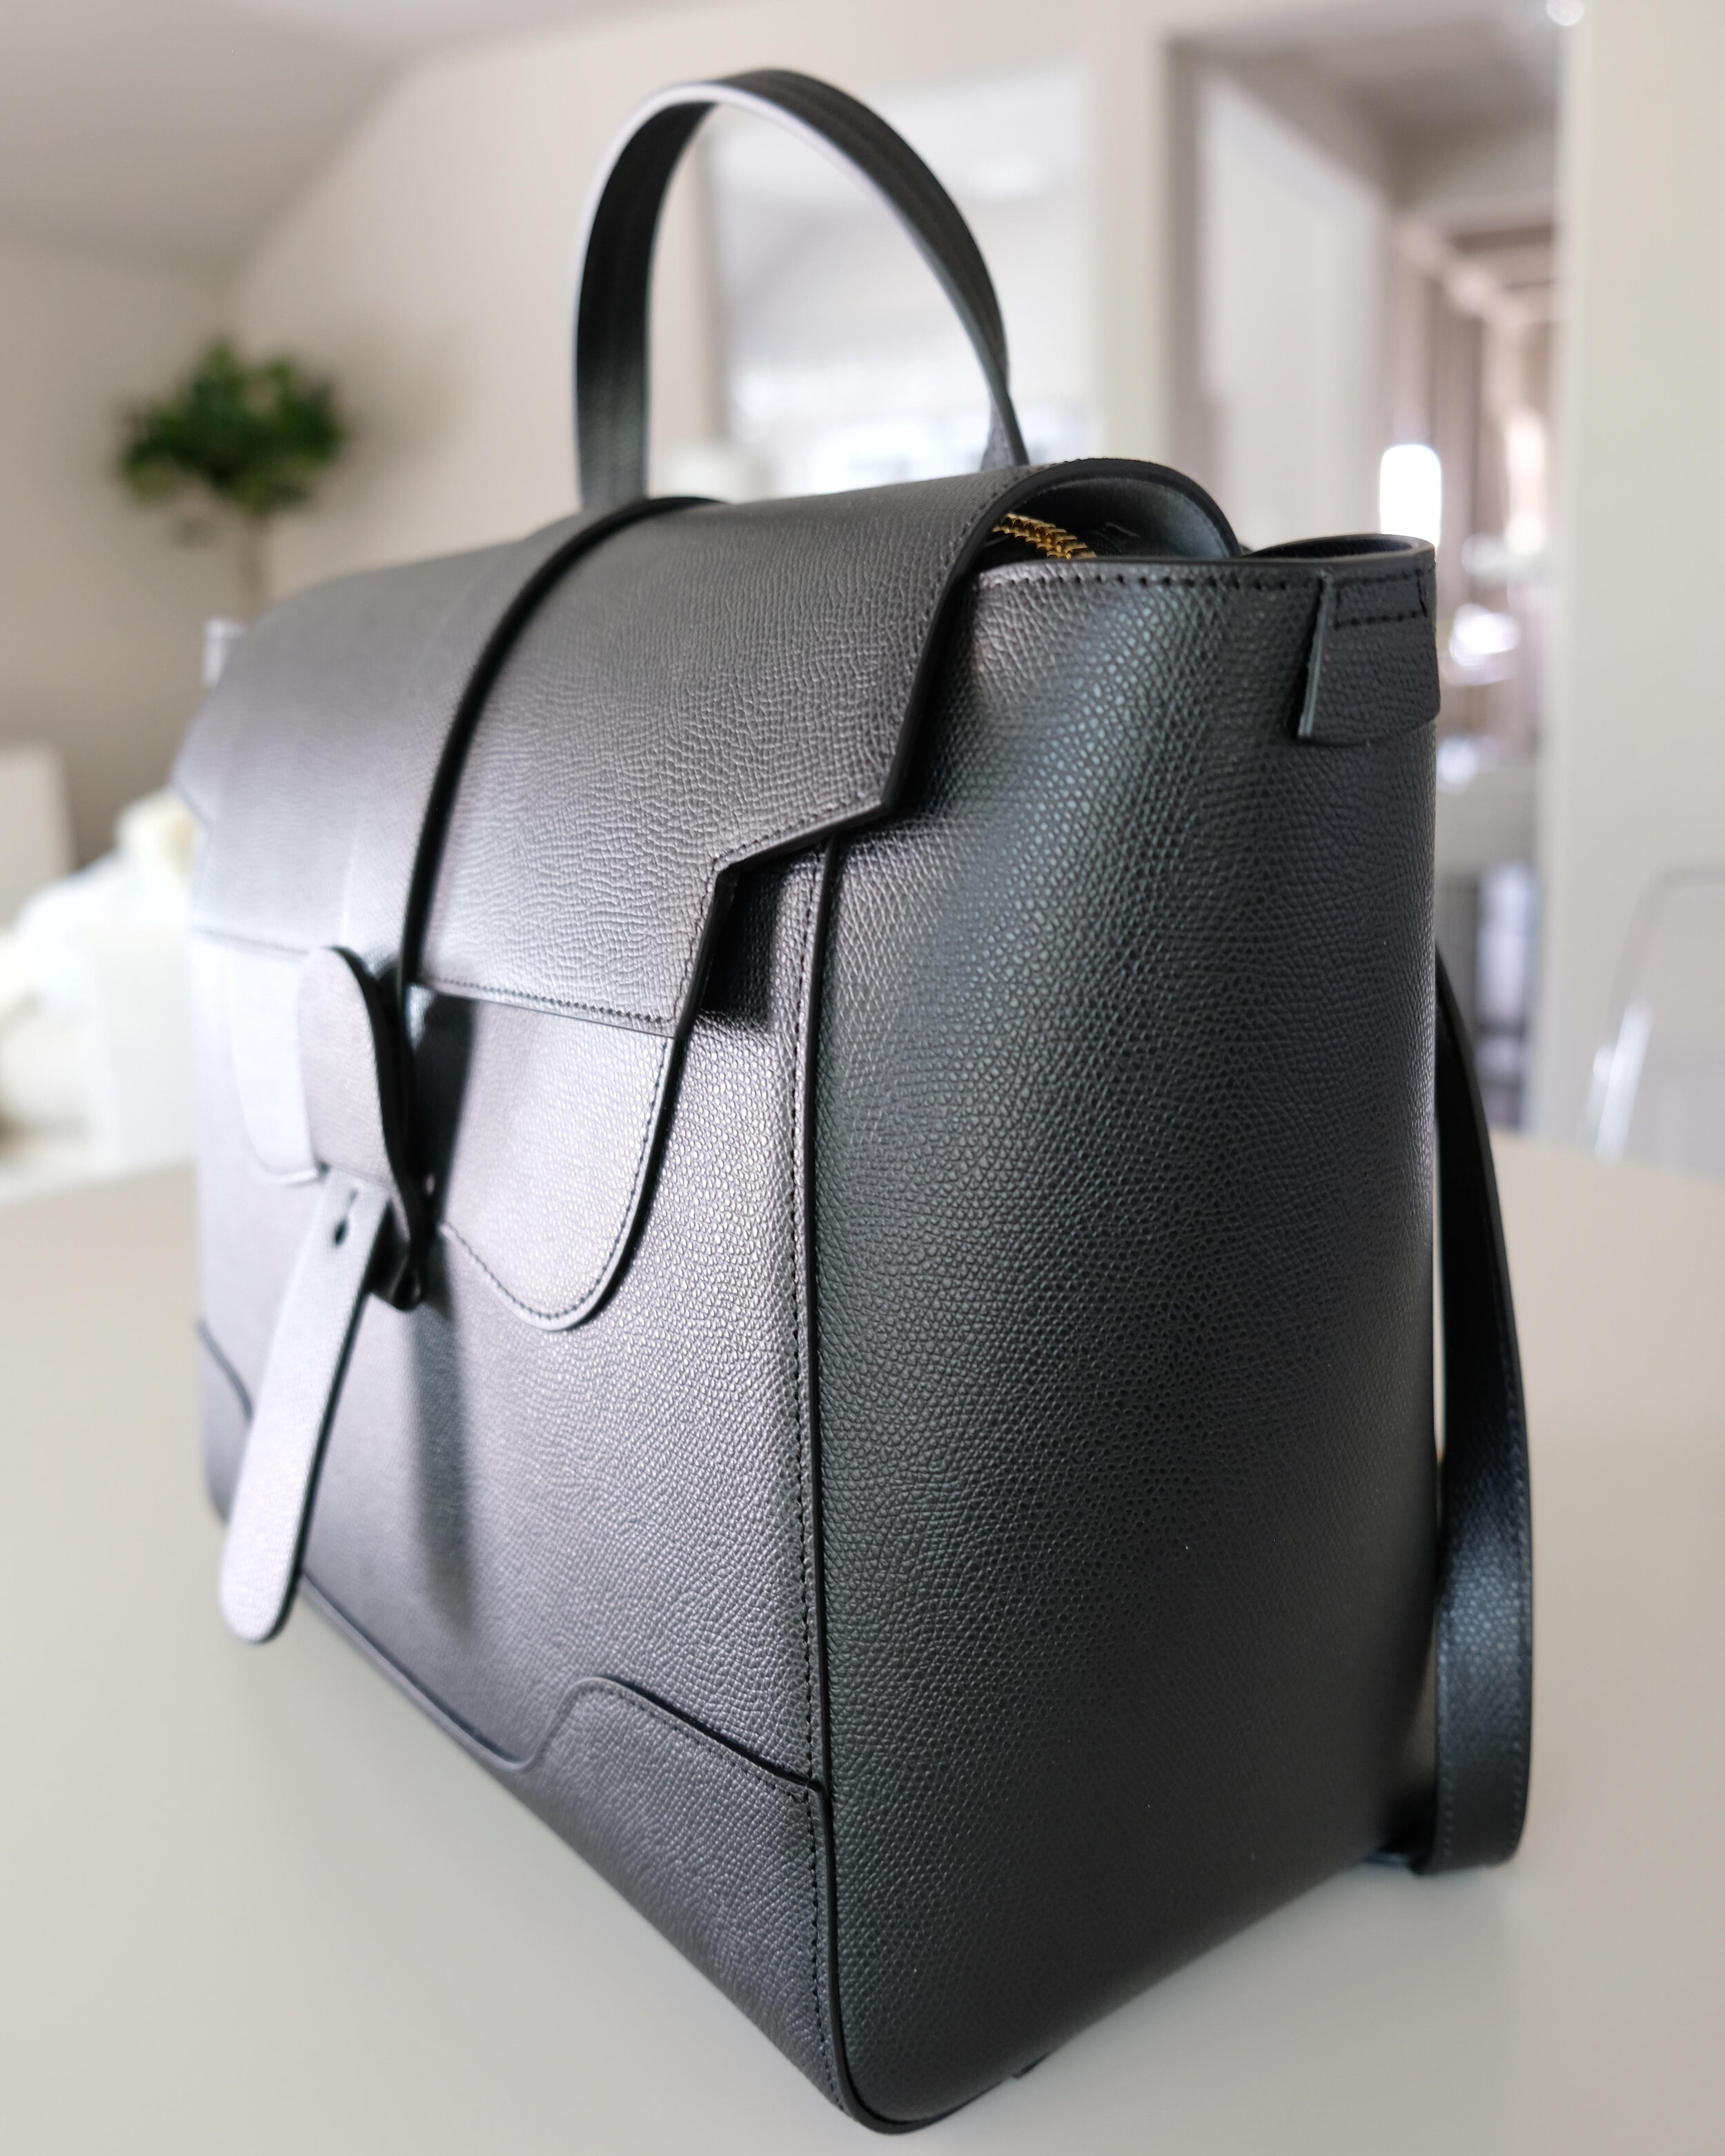 Senreve Handbag Revival Sale 2021: Maestra Bag Deal